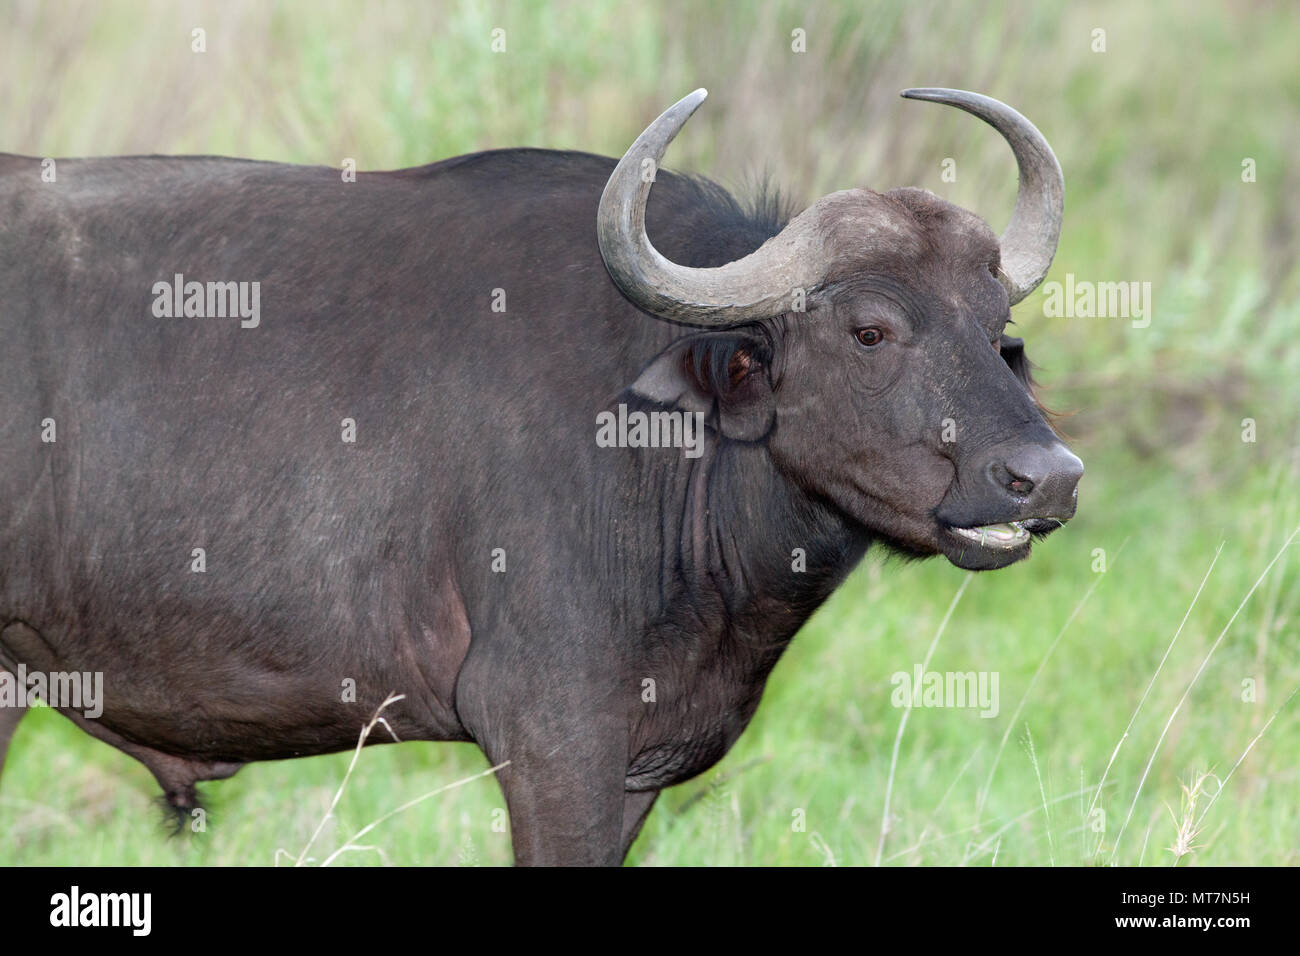 Afrikanischer Büffel (Syncerus Caffer). Weibliche oder Kuh. Meditativ. Kauen cud. Essen grob, altes Gras und dabei mehr Gras schießen aussetzen Stockfoto